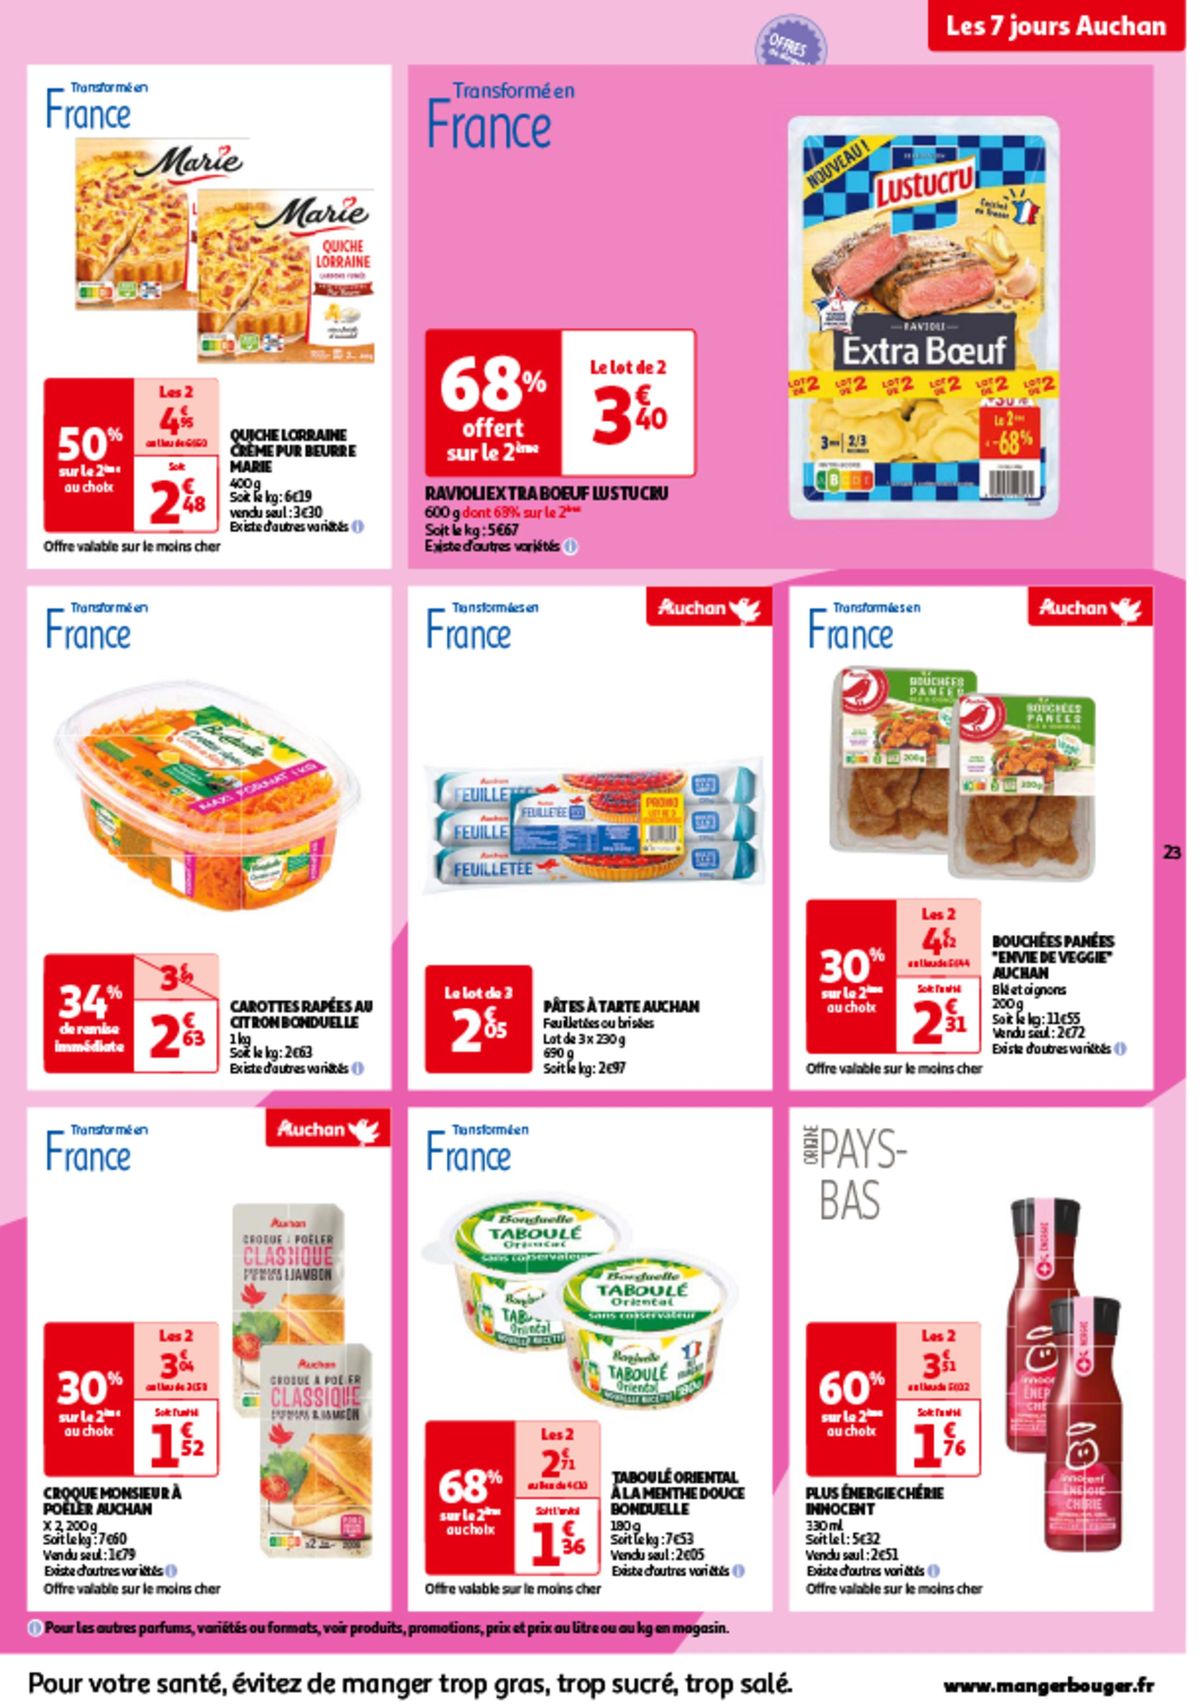 Catalogue Les 7 jours Auchan, c'est maintenant !, page 00023